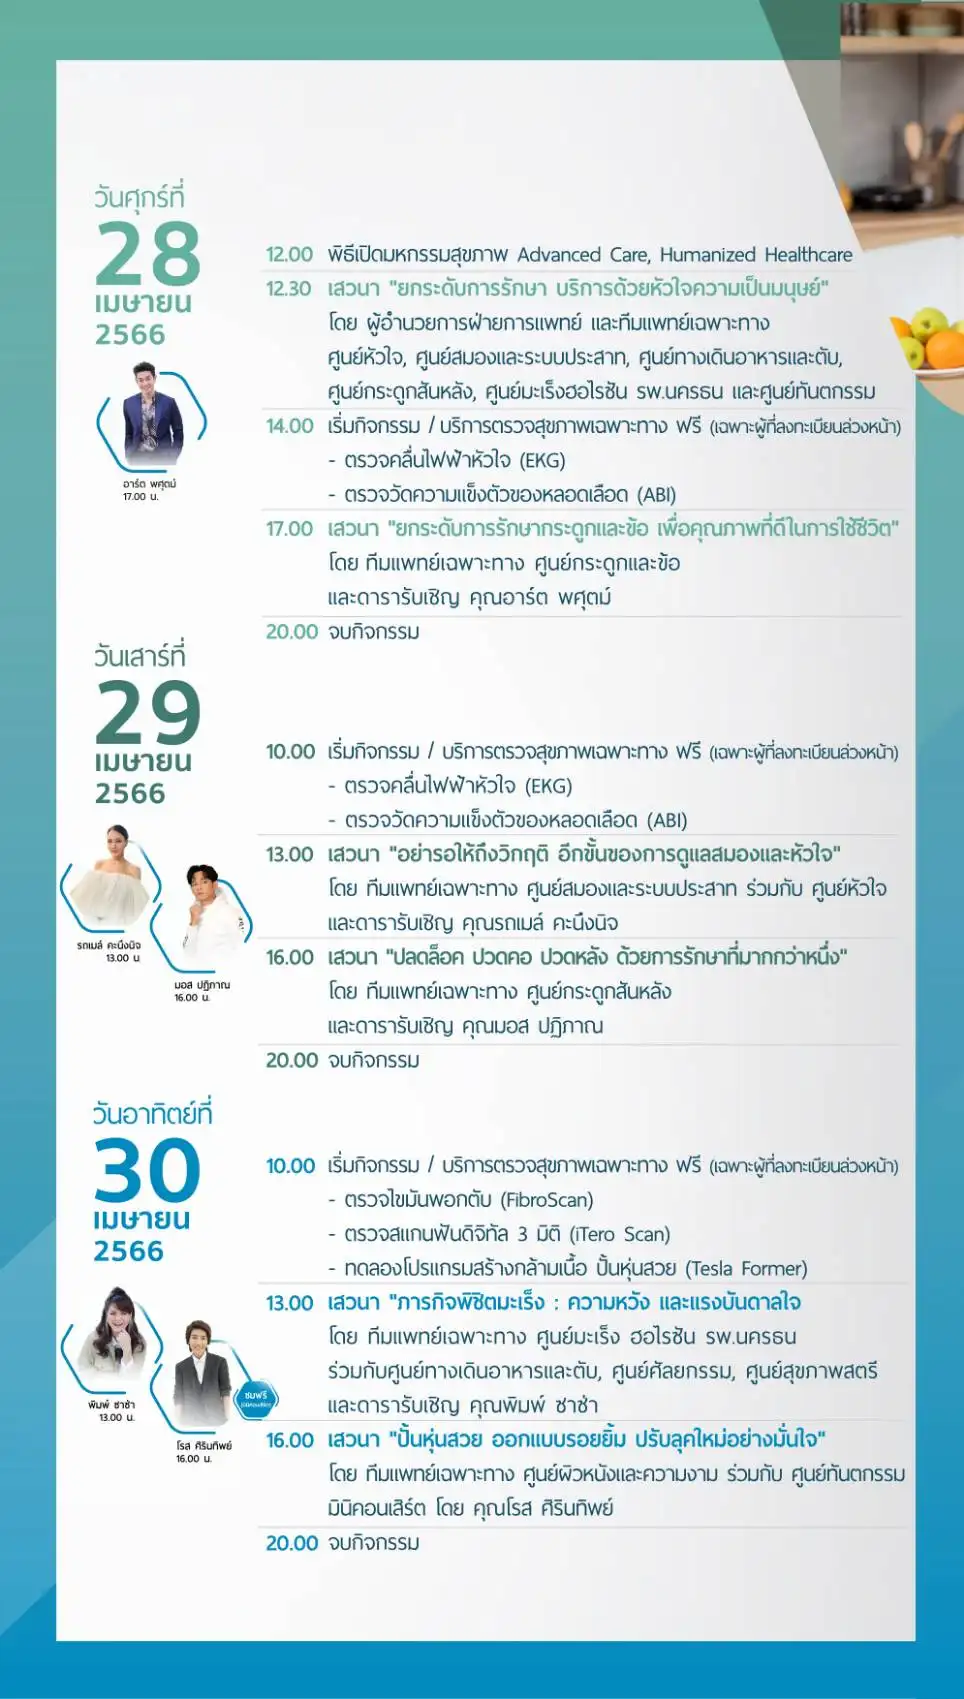 รพ.นครธน เชิญชมงาน Advanced Care, Humanized Healthcare @เซ็นทรัล พระราม 2 (28-30 เมษายน 2566)  HealthServ